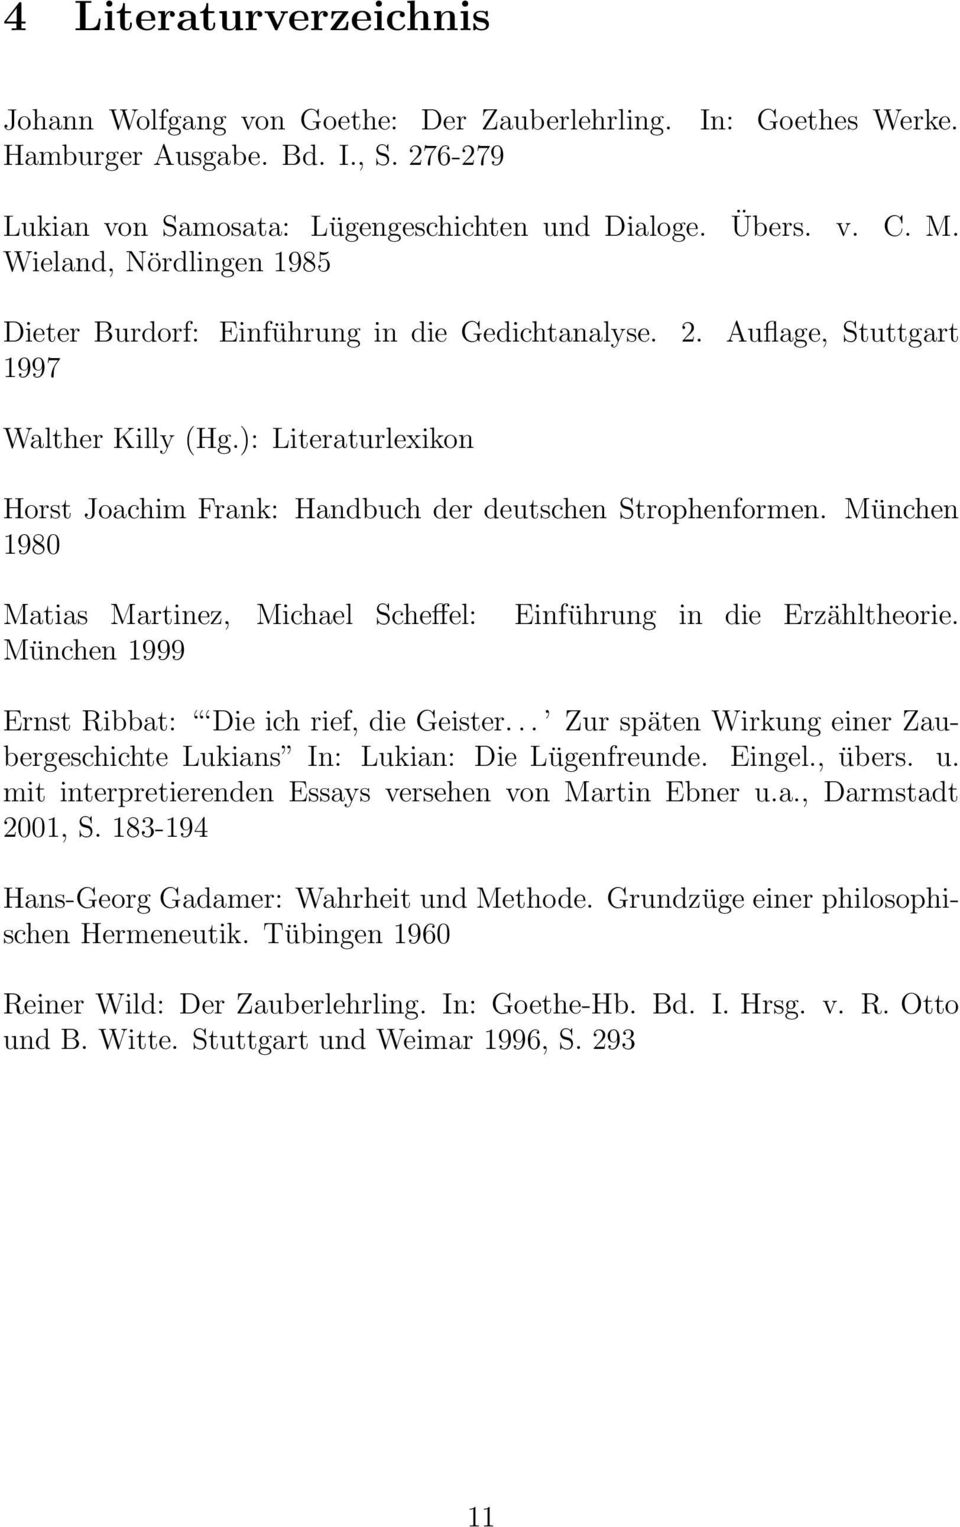 Der Zauberlehrling Analyse Und Interpretation Einer Ballade Von J W Goethe Pdf Kostenfreier Download